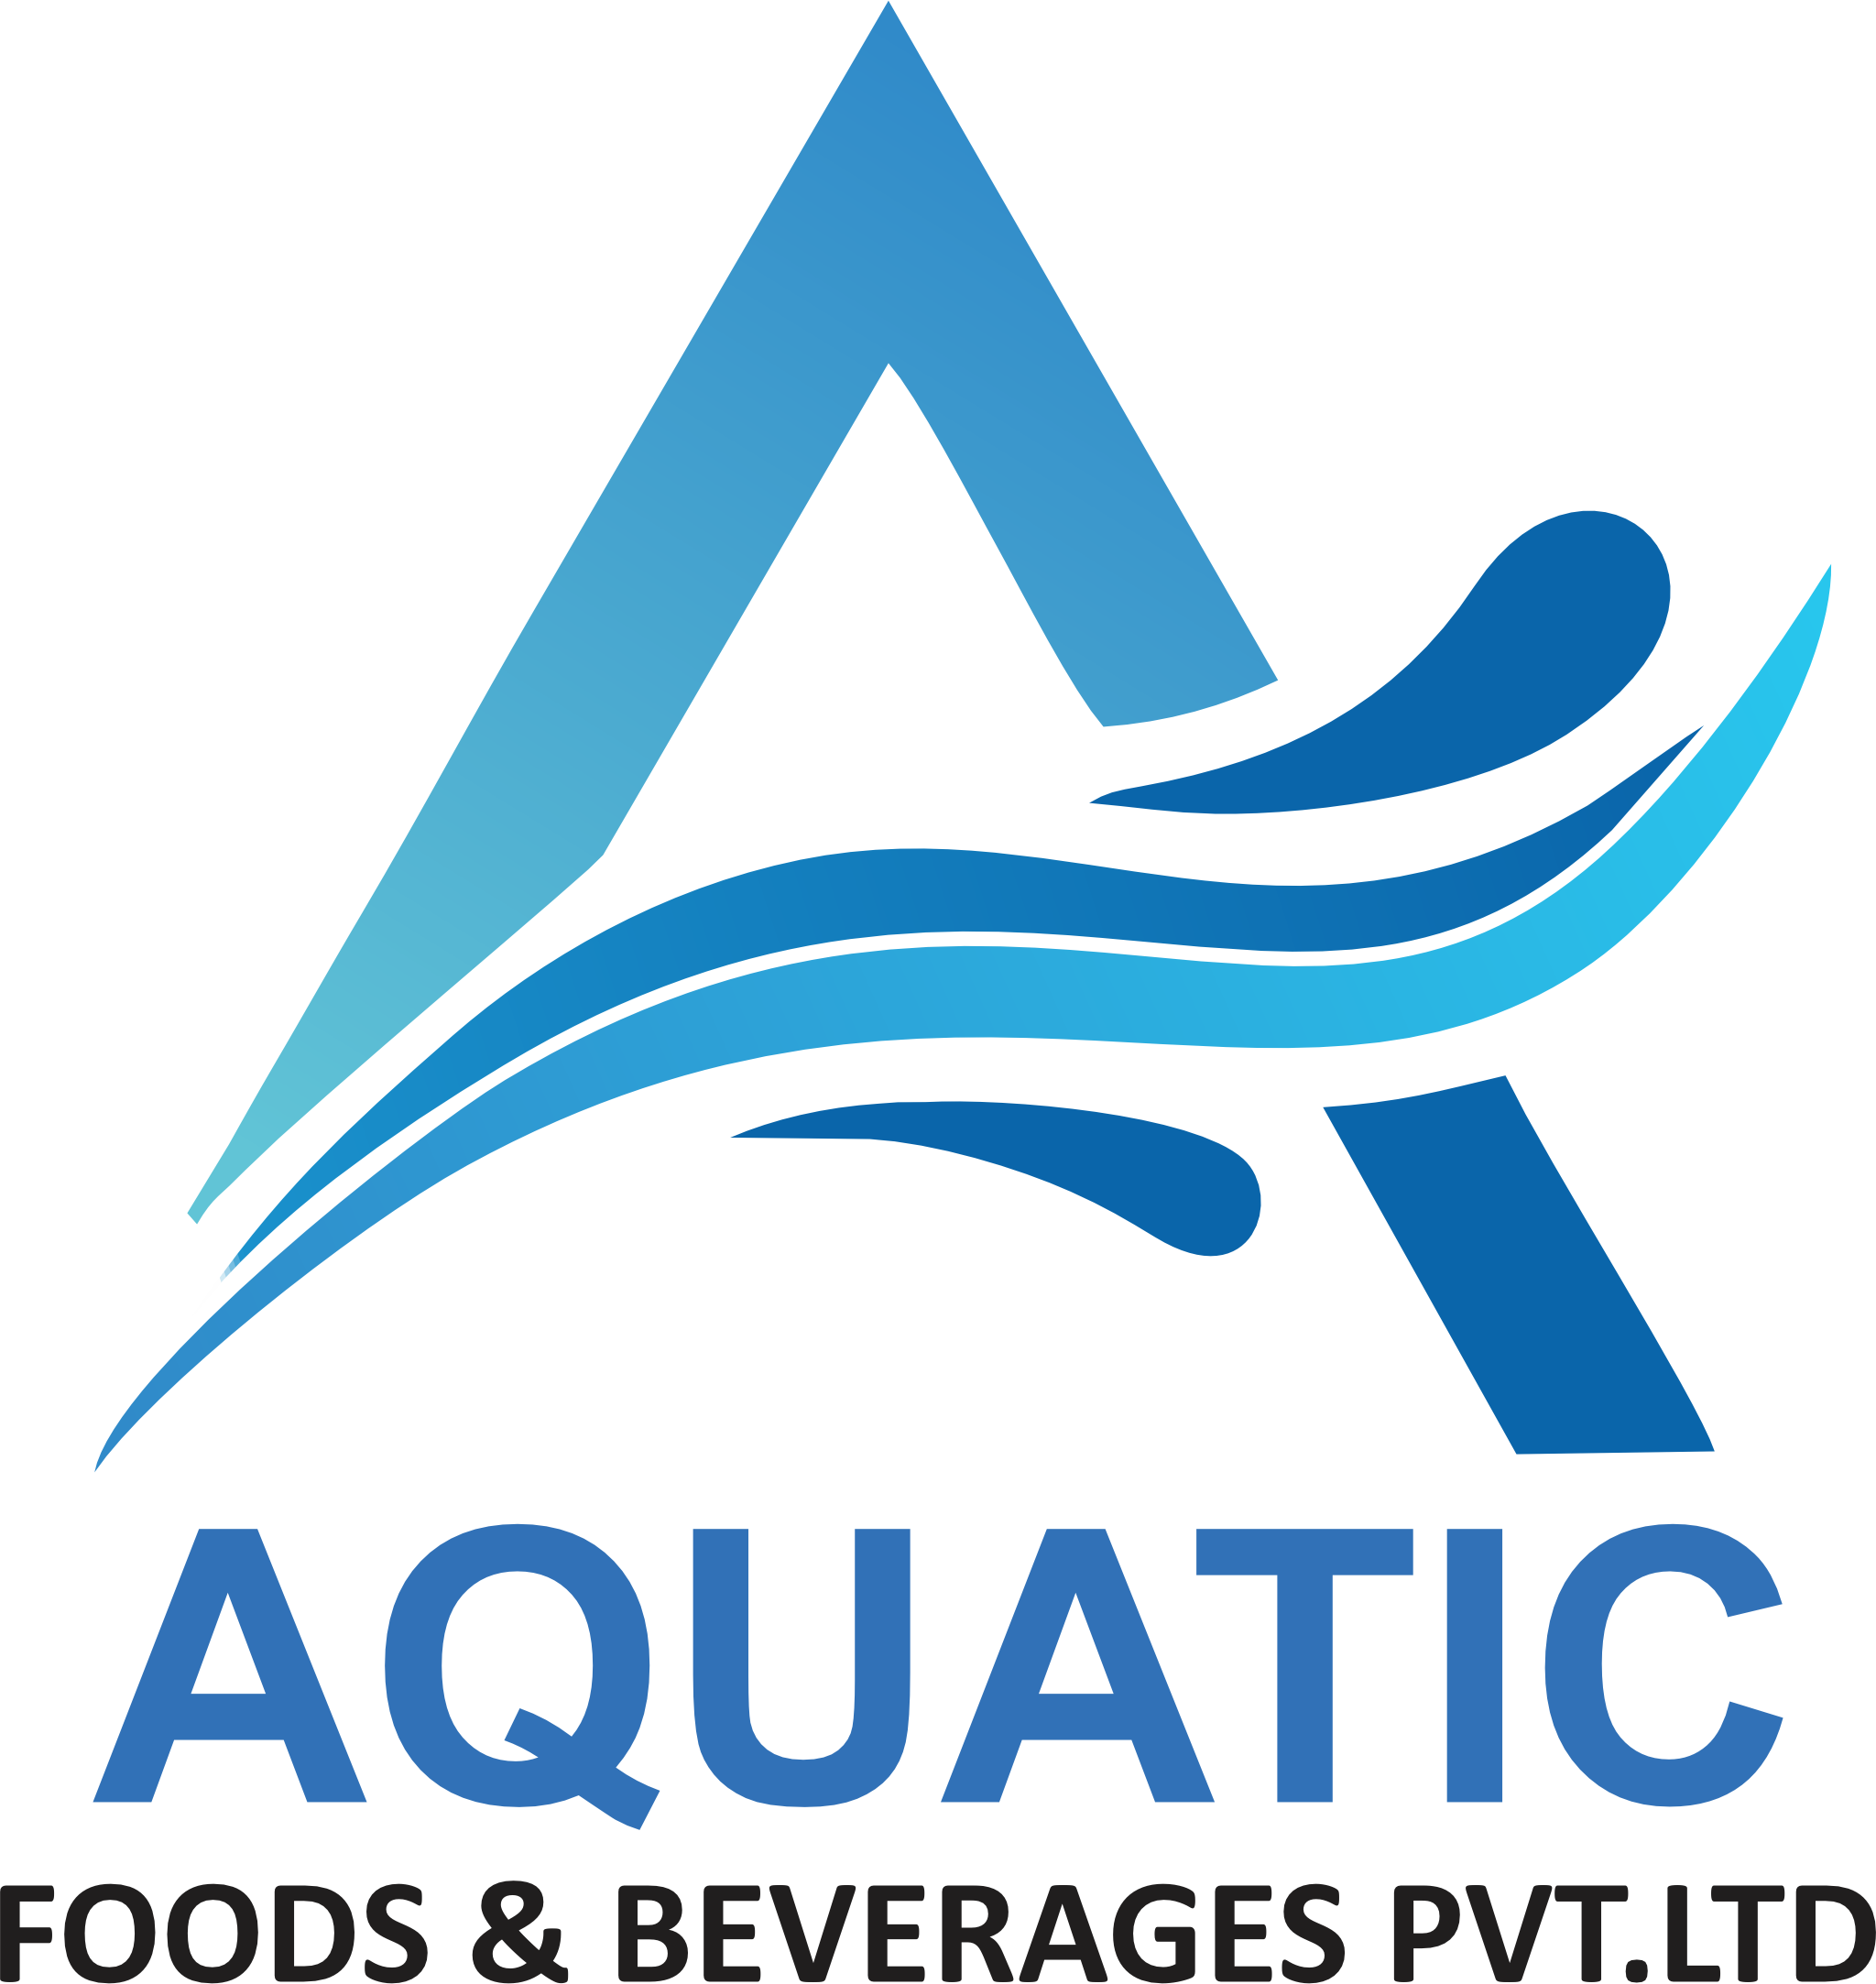 Aquatic Foods & Beverages PVT LTD